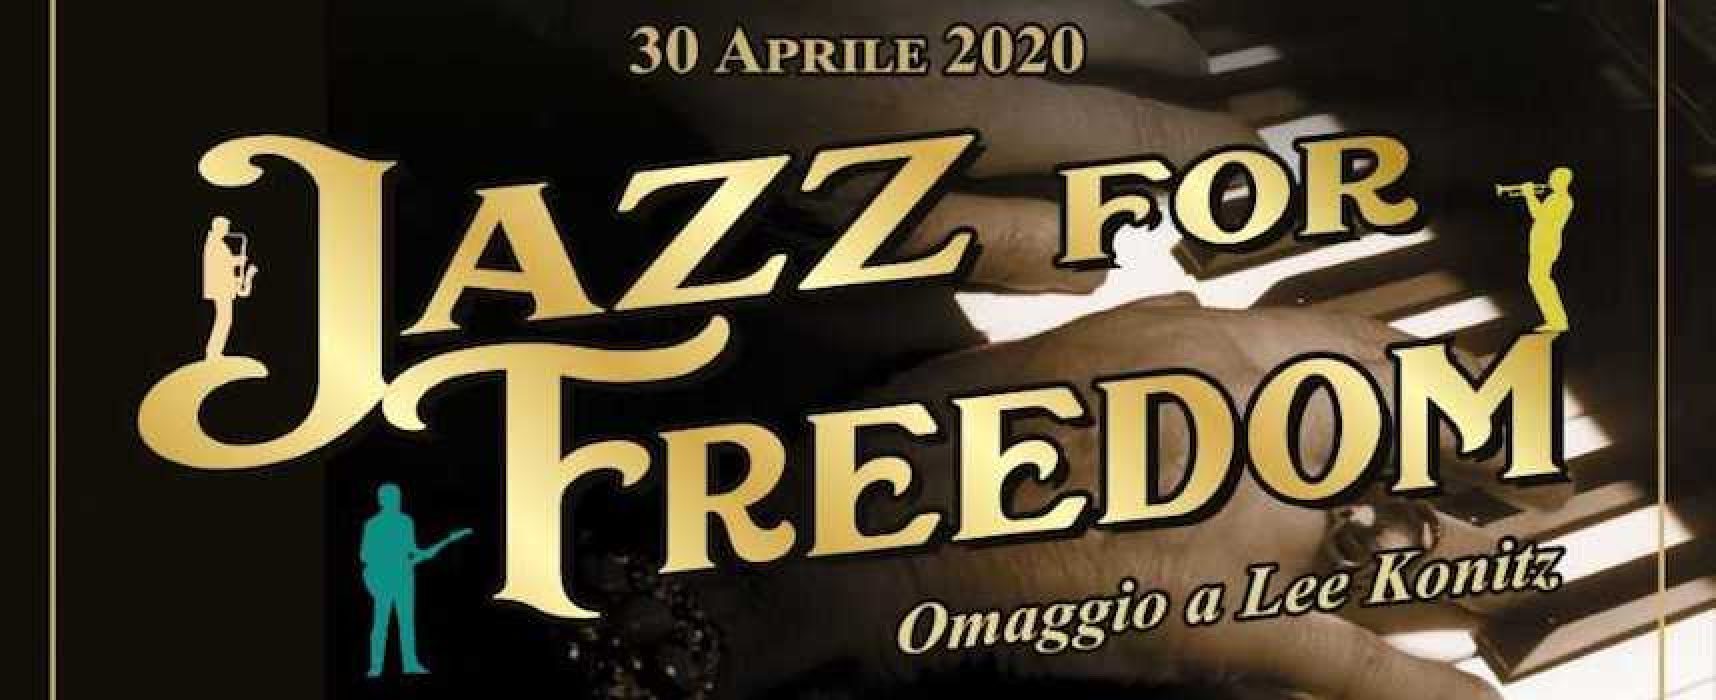 Video-concerto della Nuova Accademia Orfeo per Giornata Internazionale del jazz / VIDEO